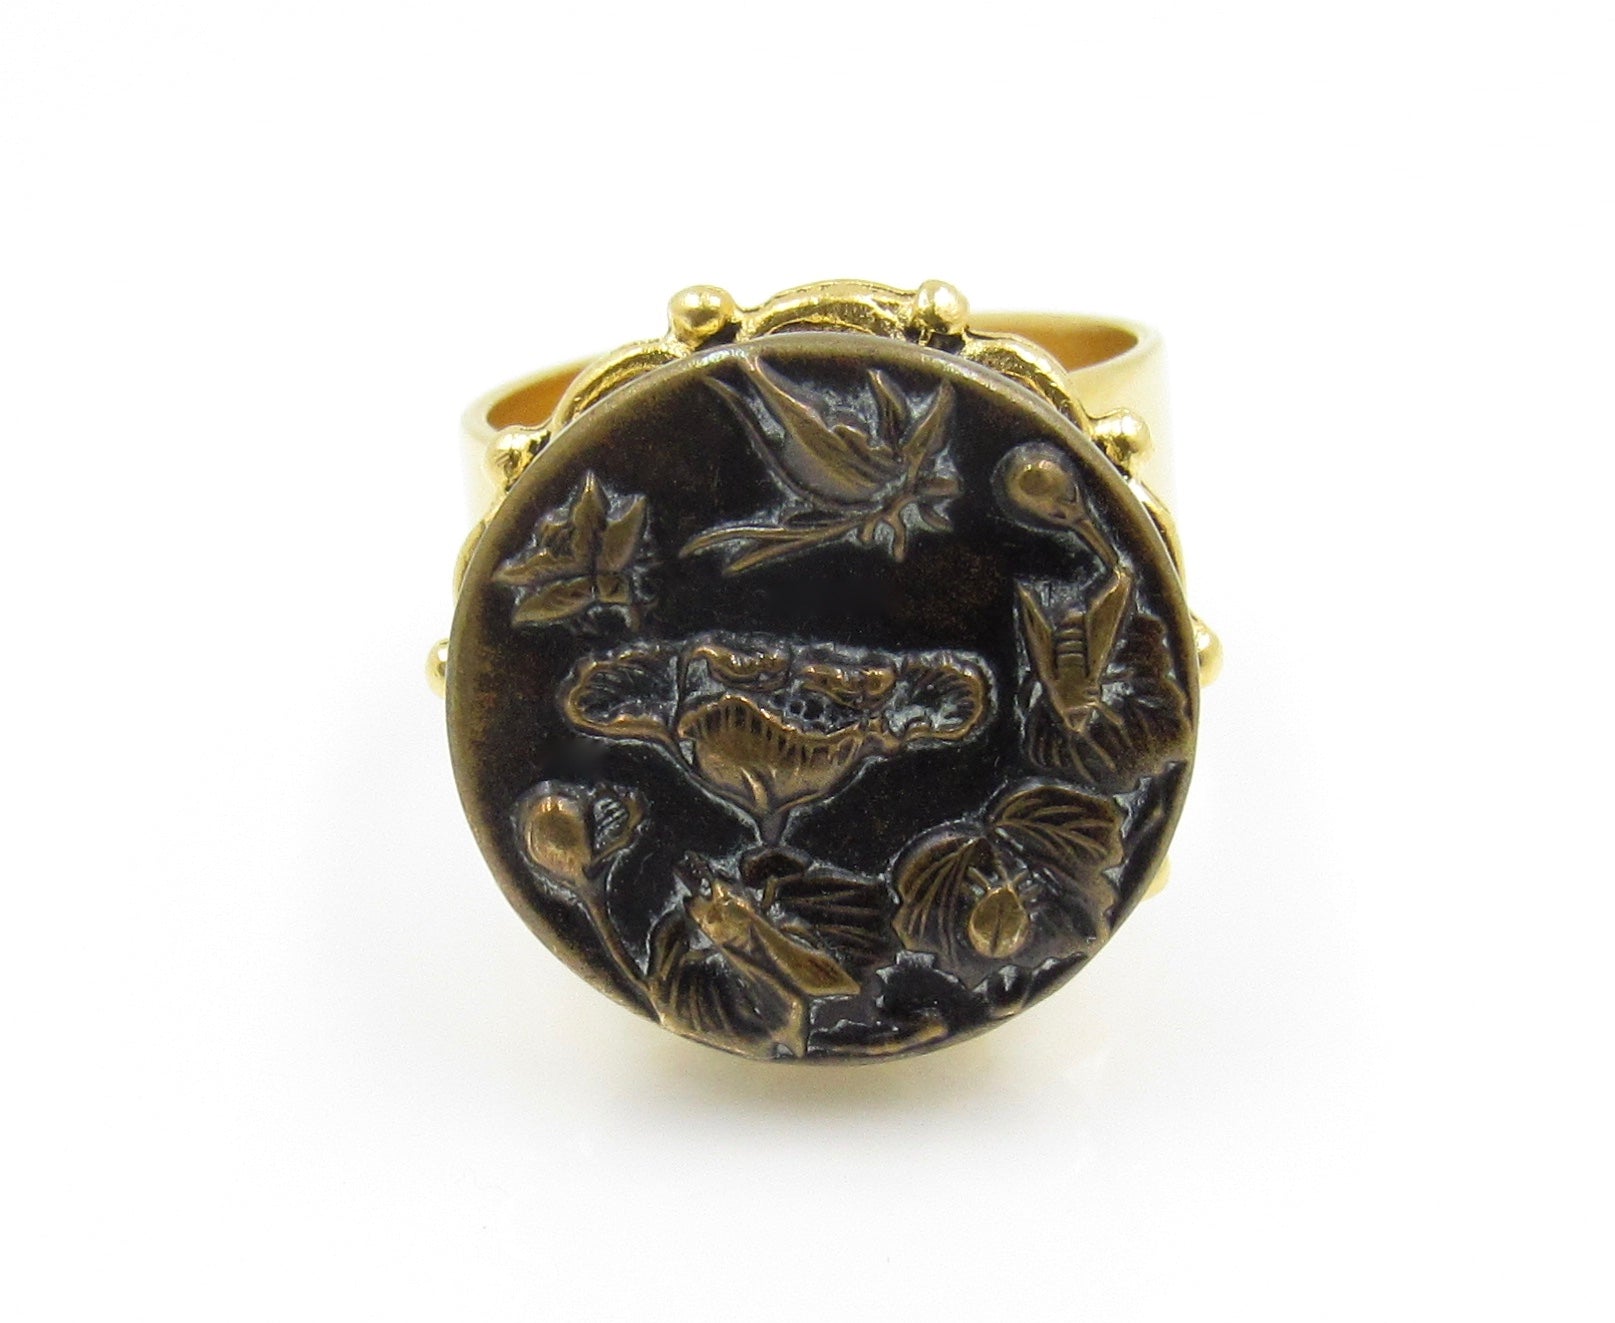 Vintage Art Nouveau Button Ring